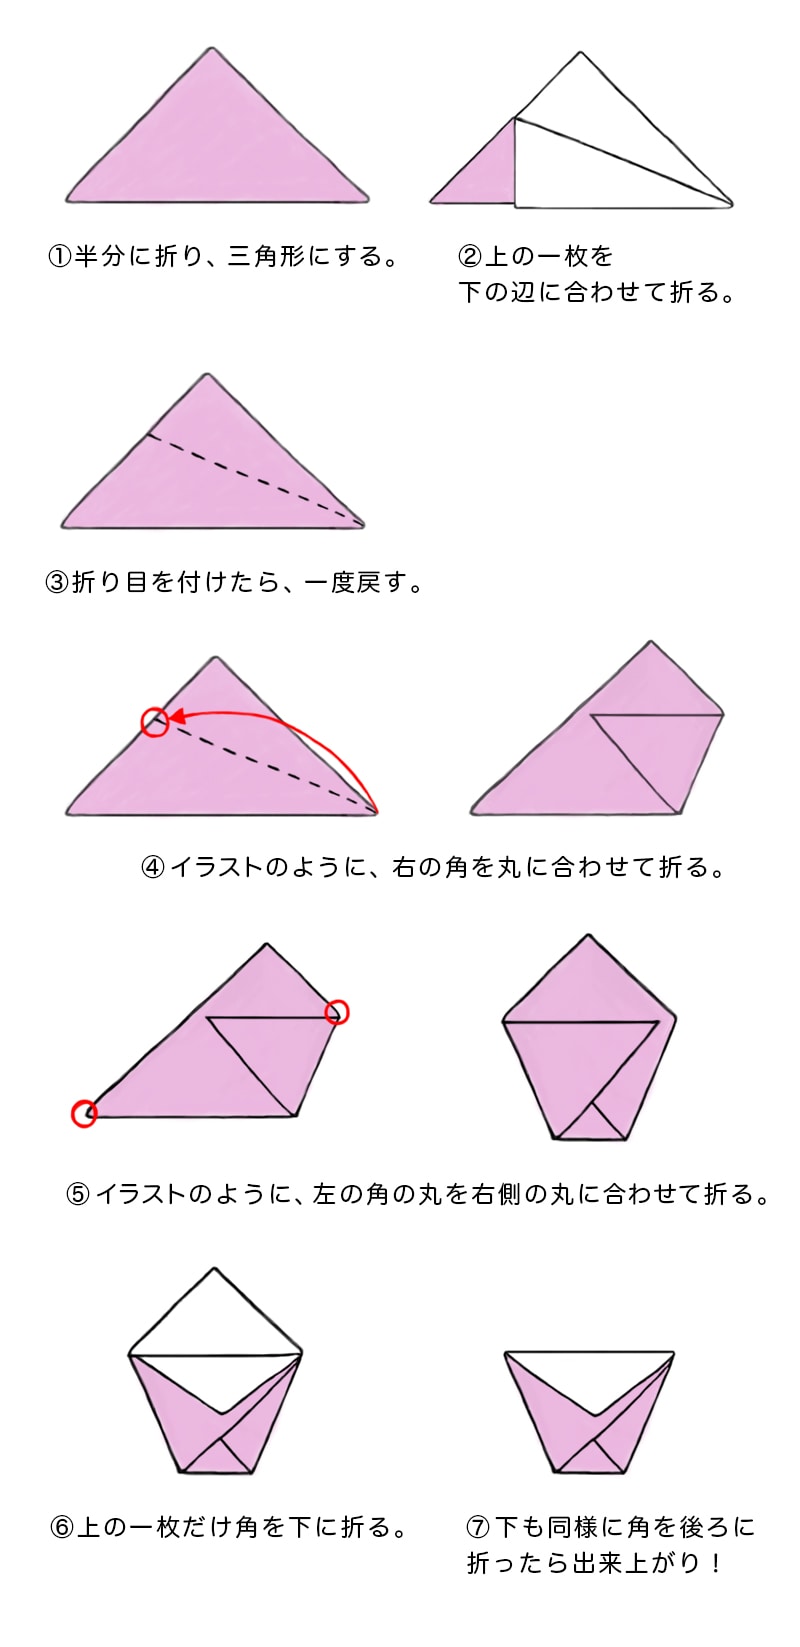 シモジマ オンライン 簡単に折れる 折り紙の折り方特集 包装用品 店舗用品の通販サイト